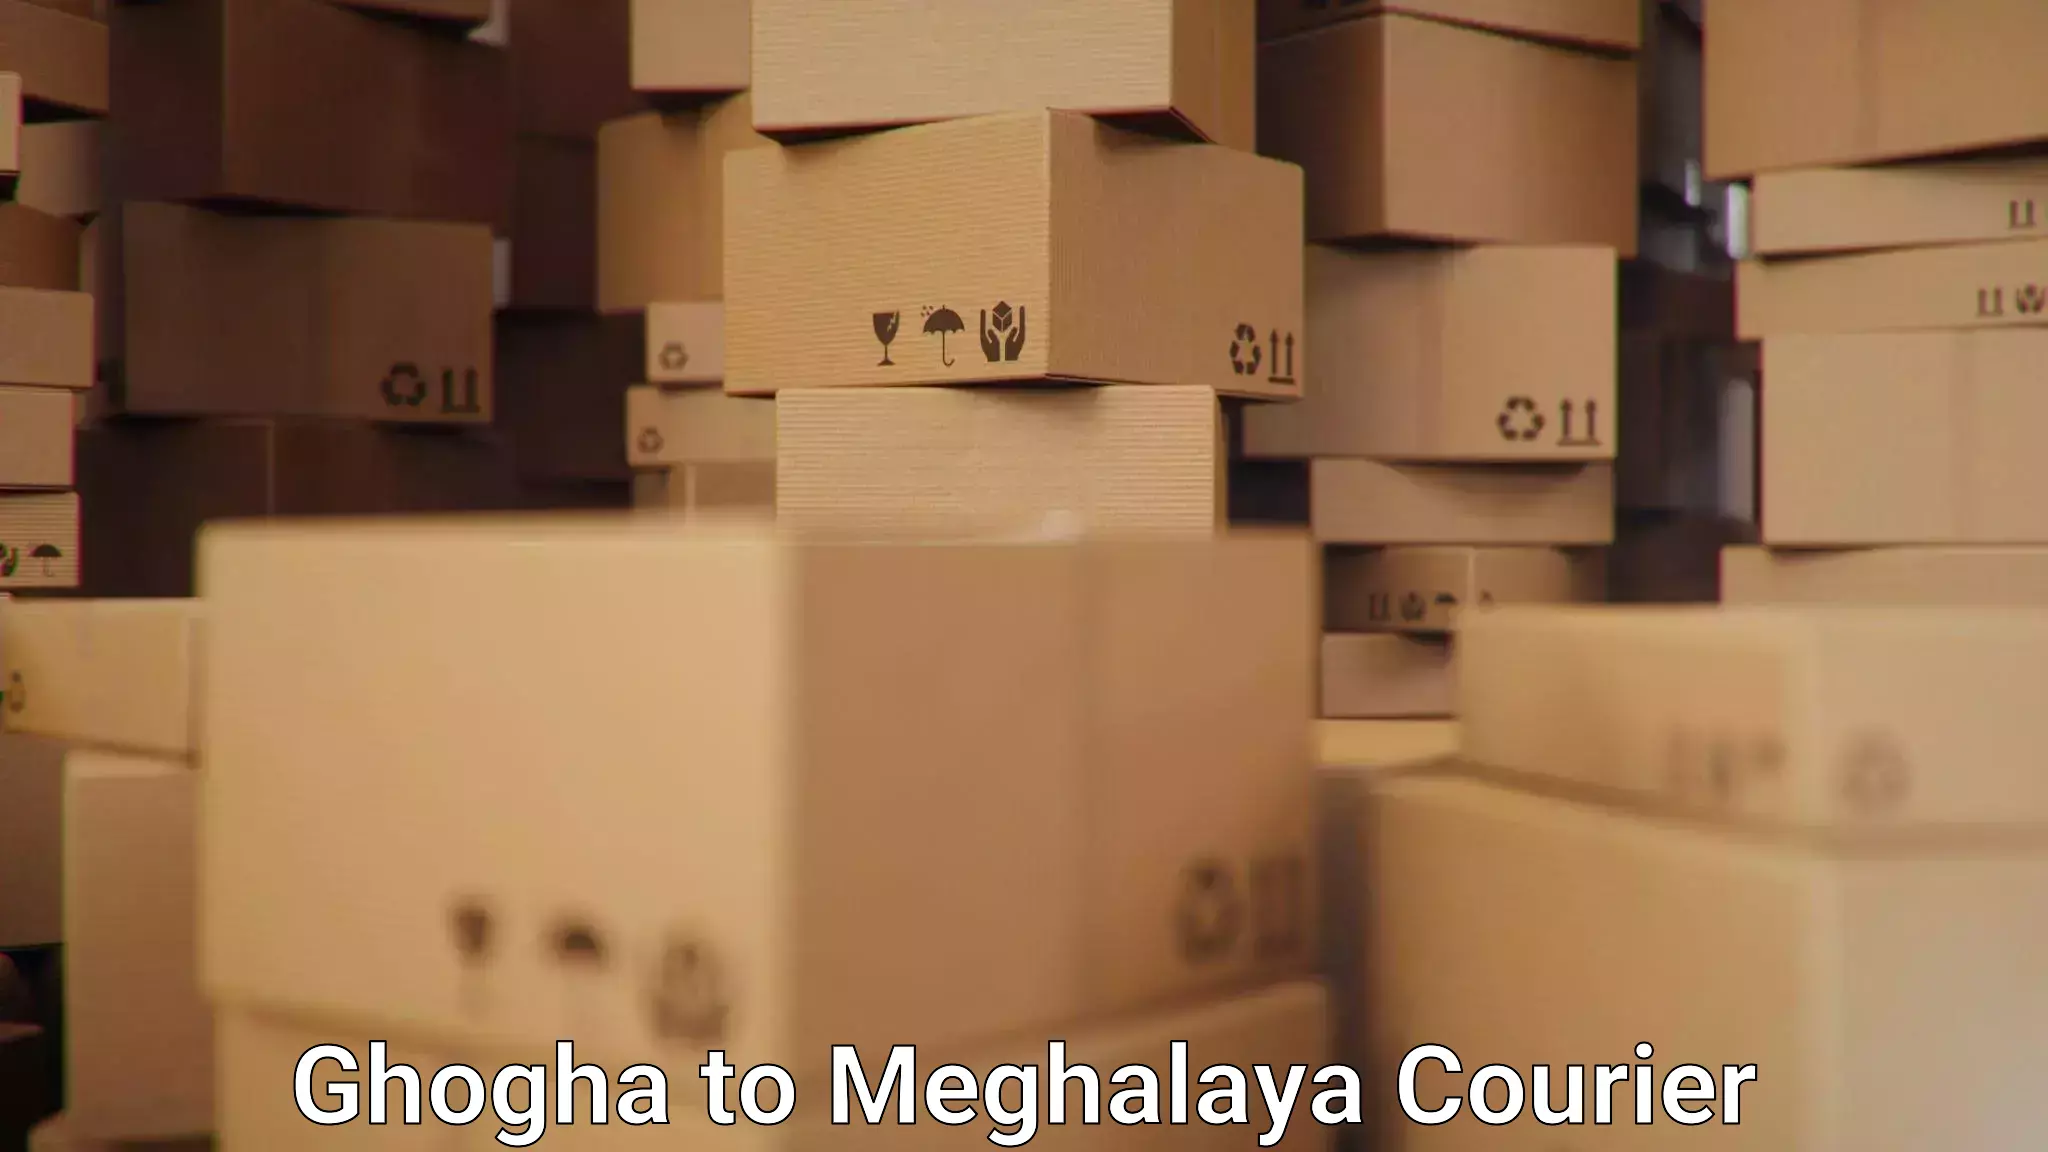 Global logistics network Ghogha to Meghalaya